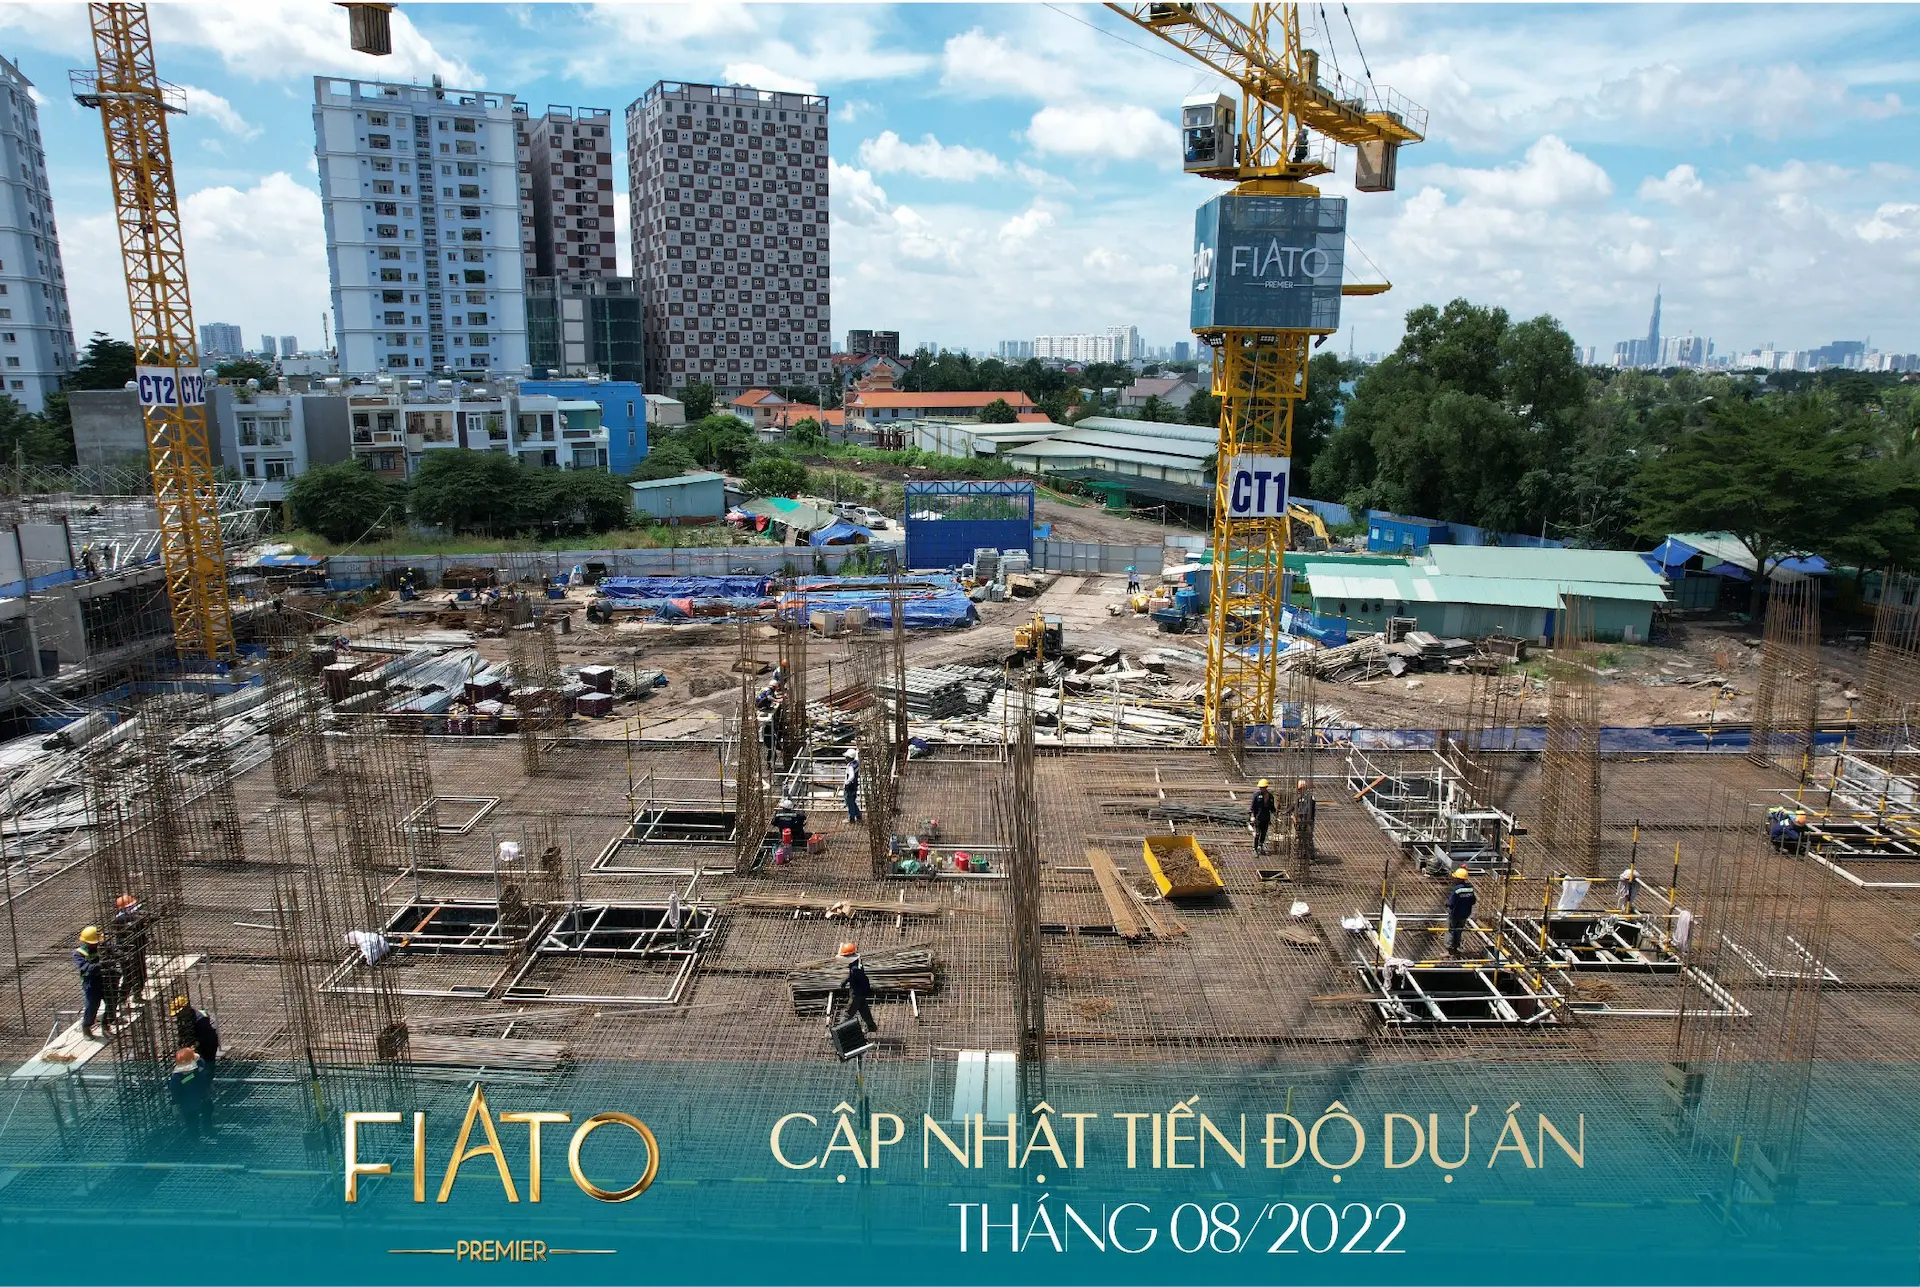 Tiến độ xây dựng Fiato Premier tháng 08/2022